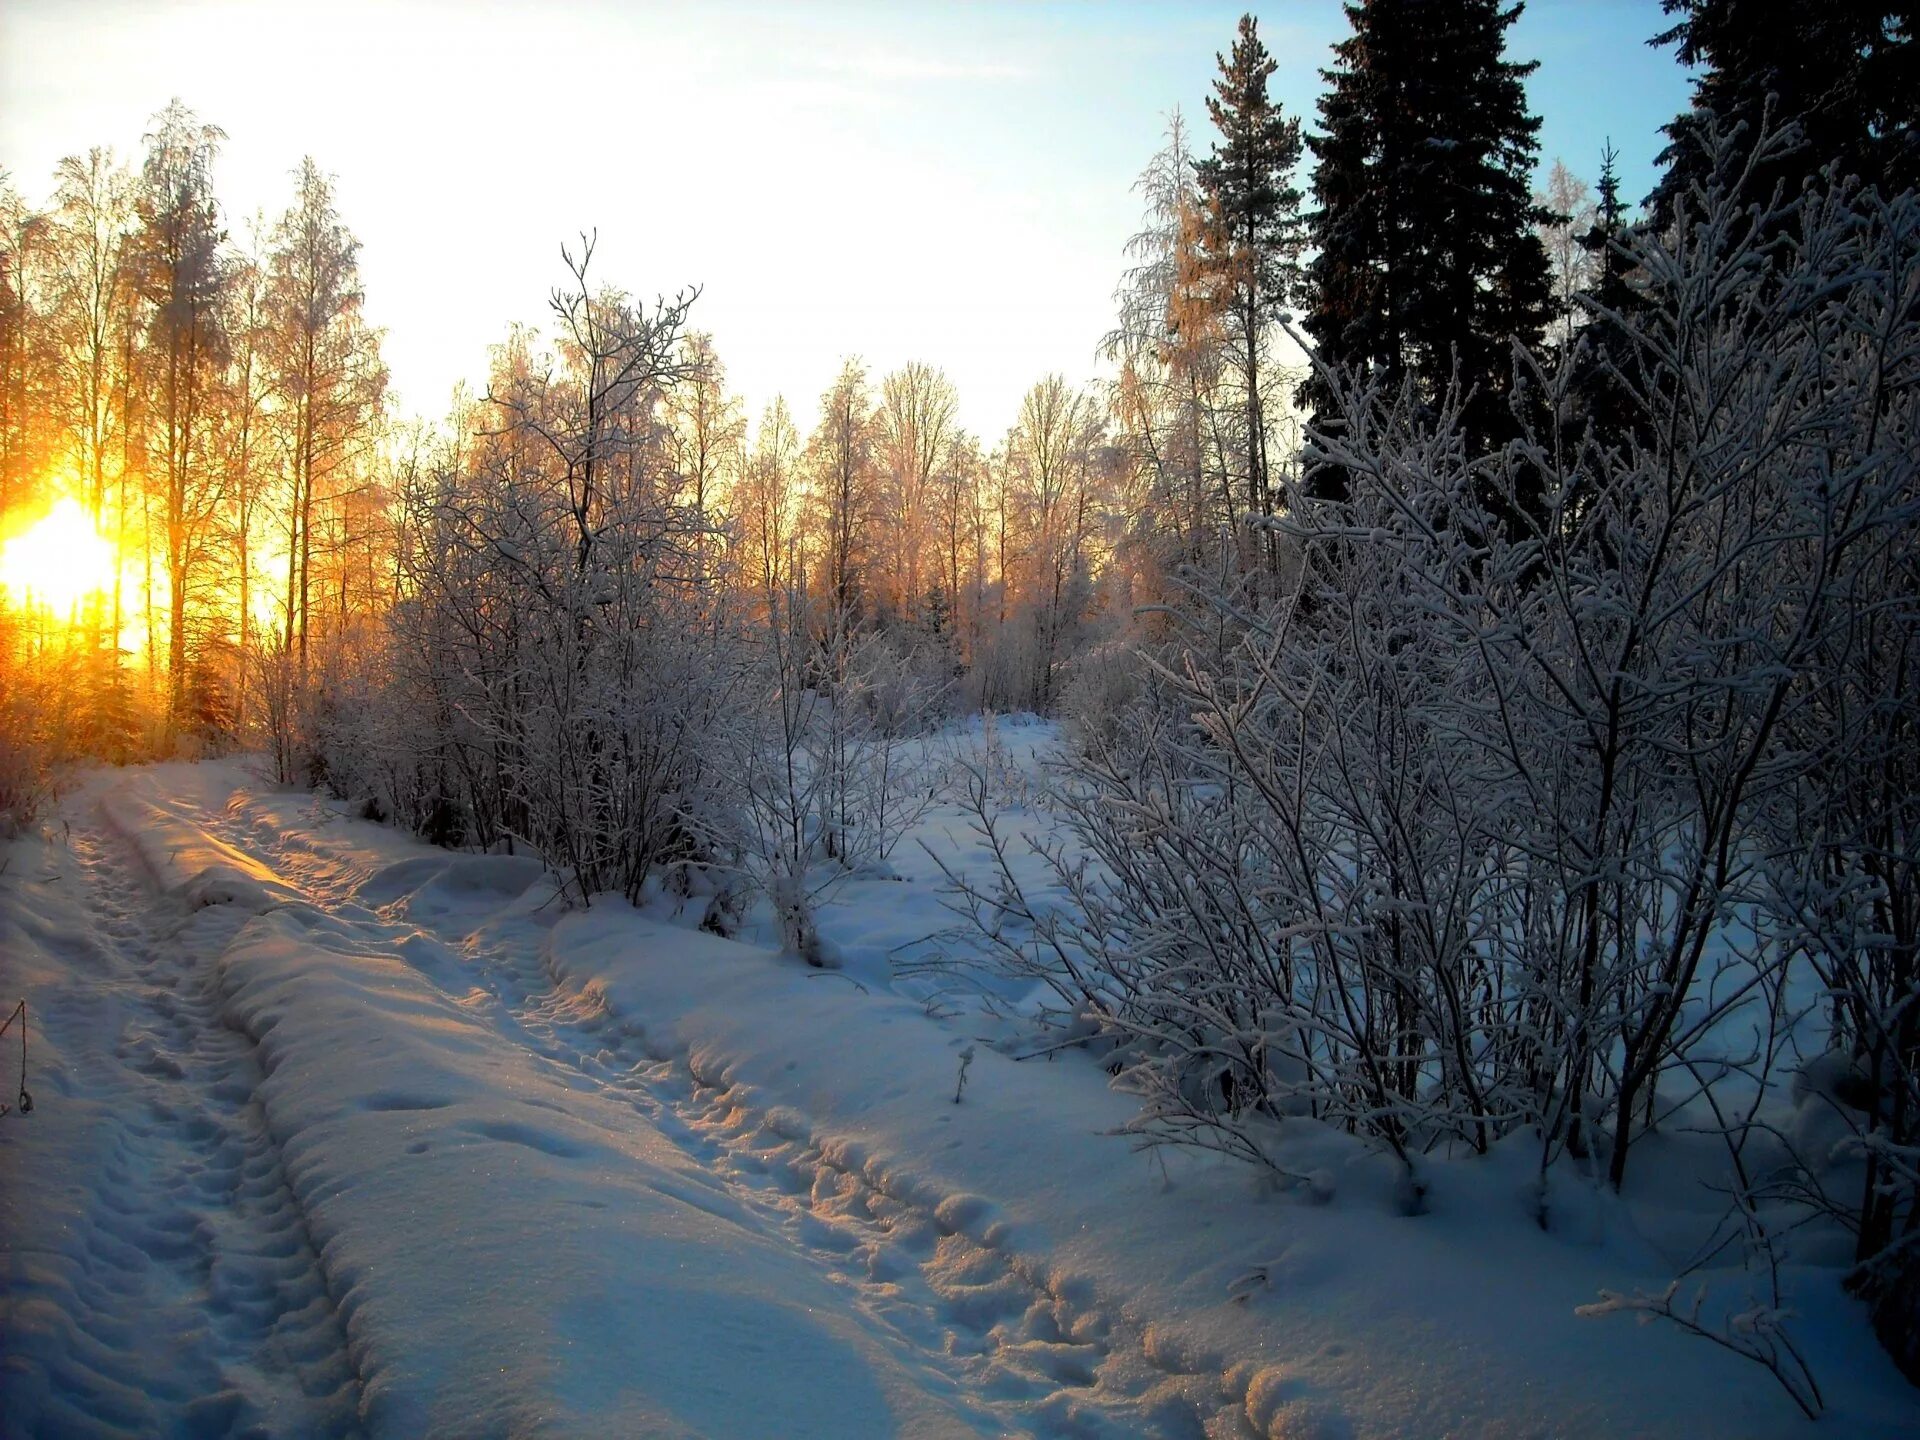 Все кругом быстро чернело. Зима. Зимой в лесу. Зимняя дорога в лесу. Закат в зимнем лесу.